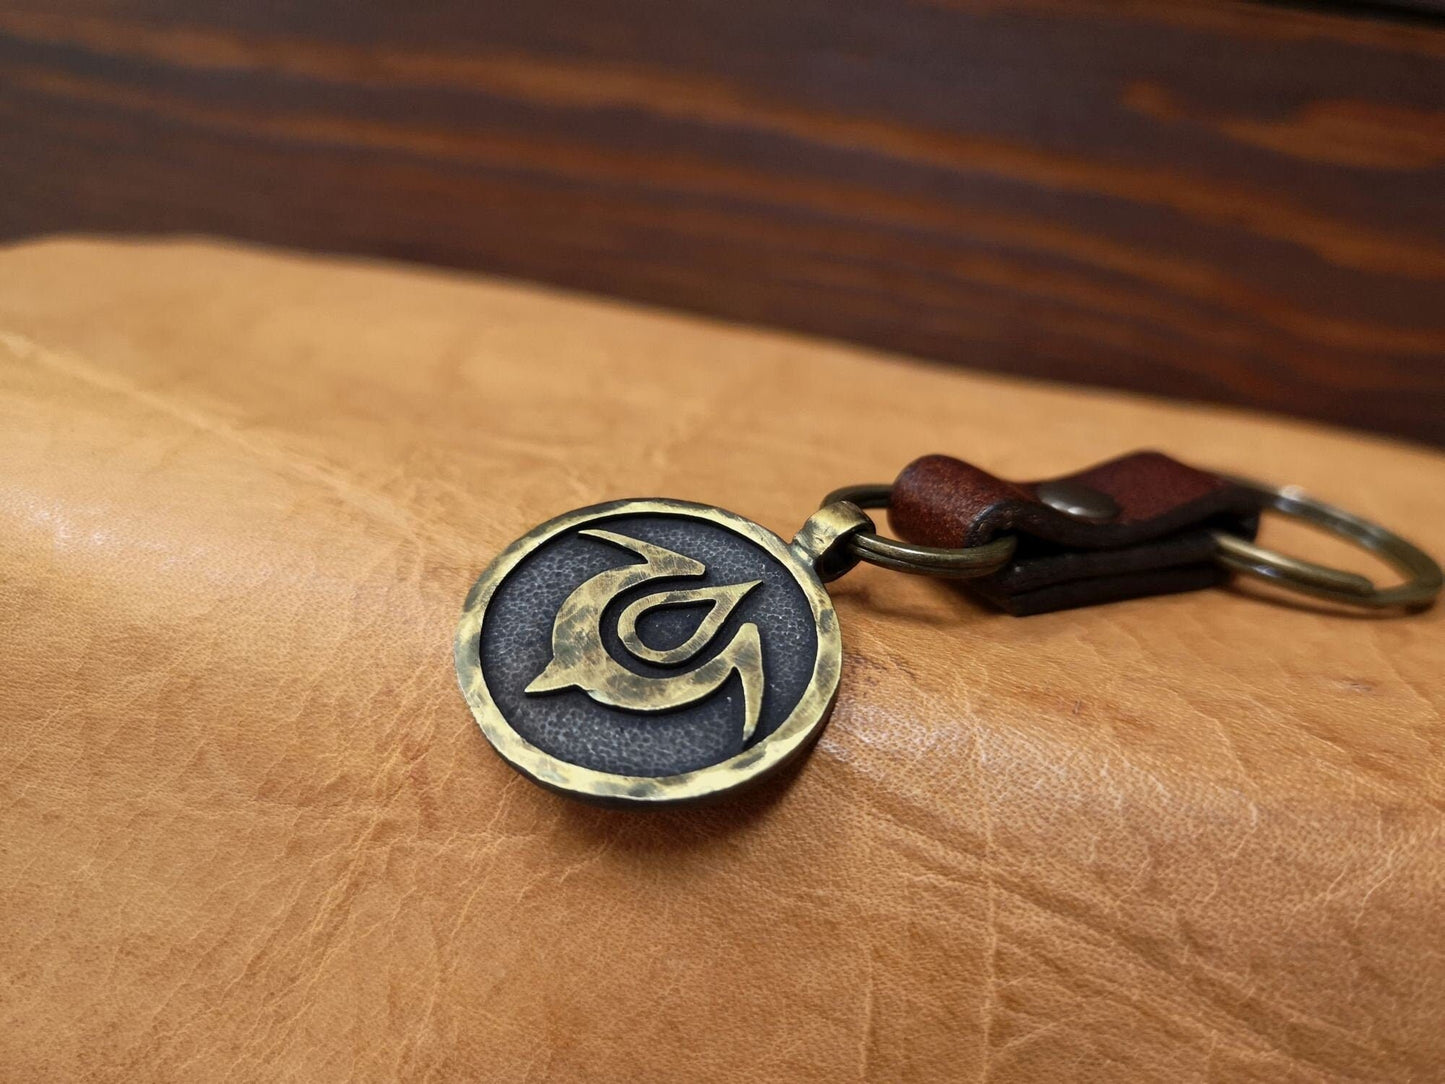 Fire Emblem Exalt Solid Metal Keychain Keyring Accessory Jewelry - Baldur Jewelry